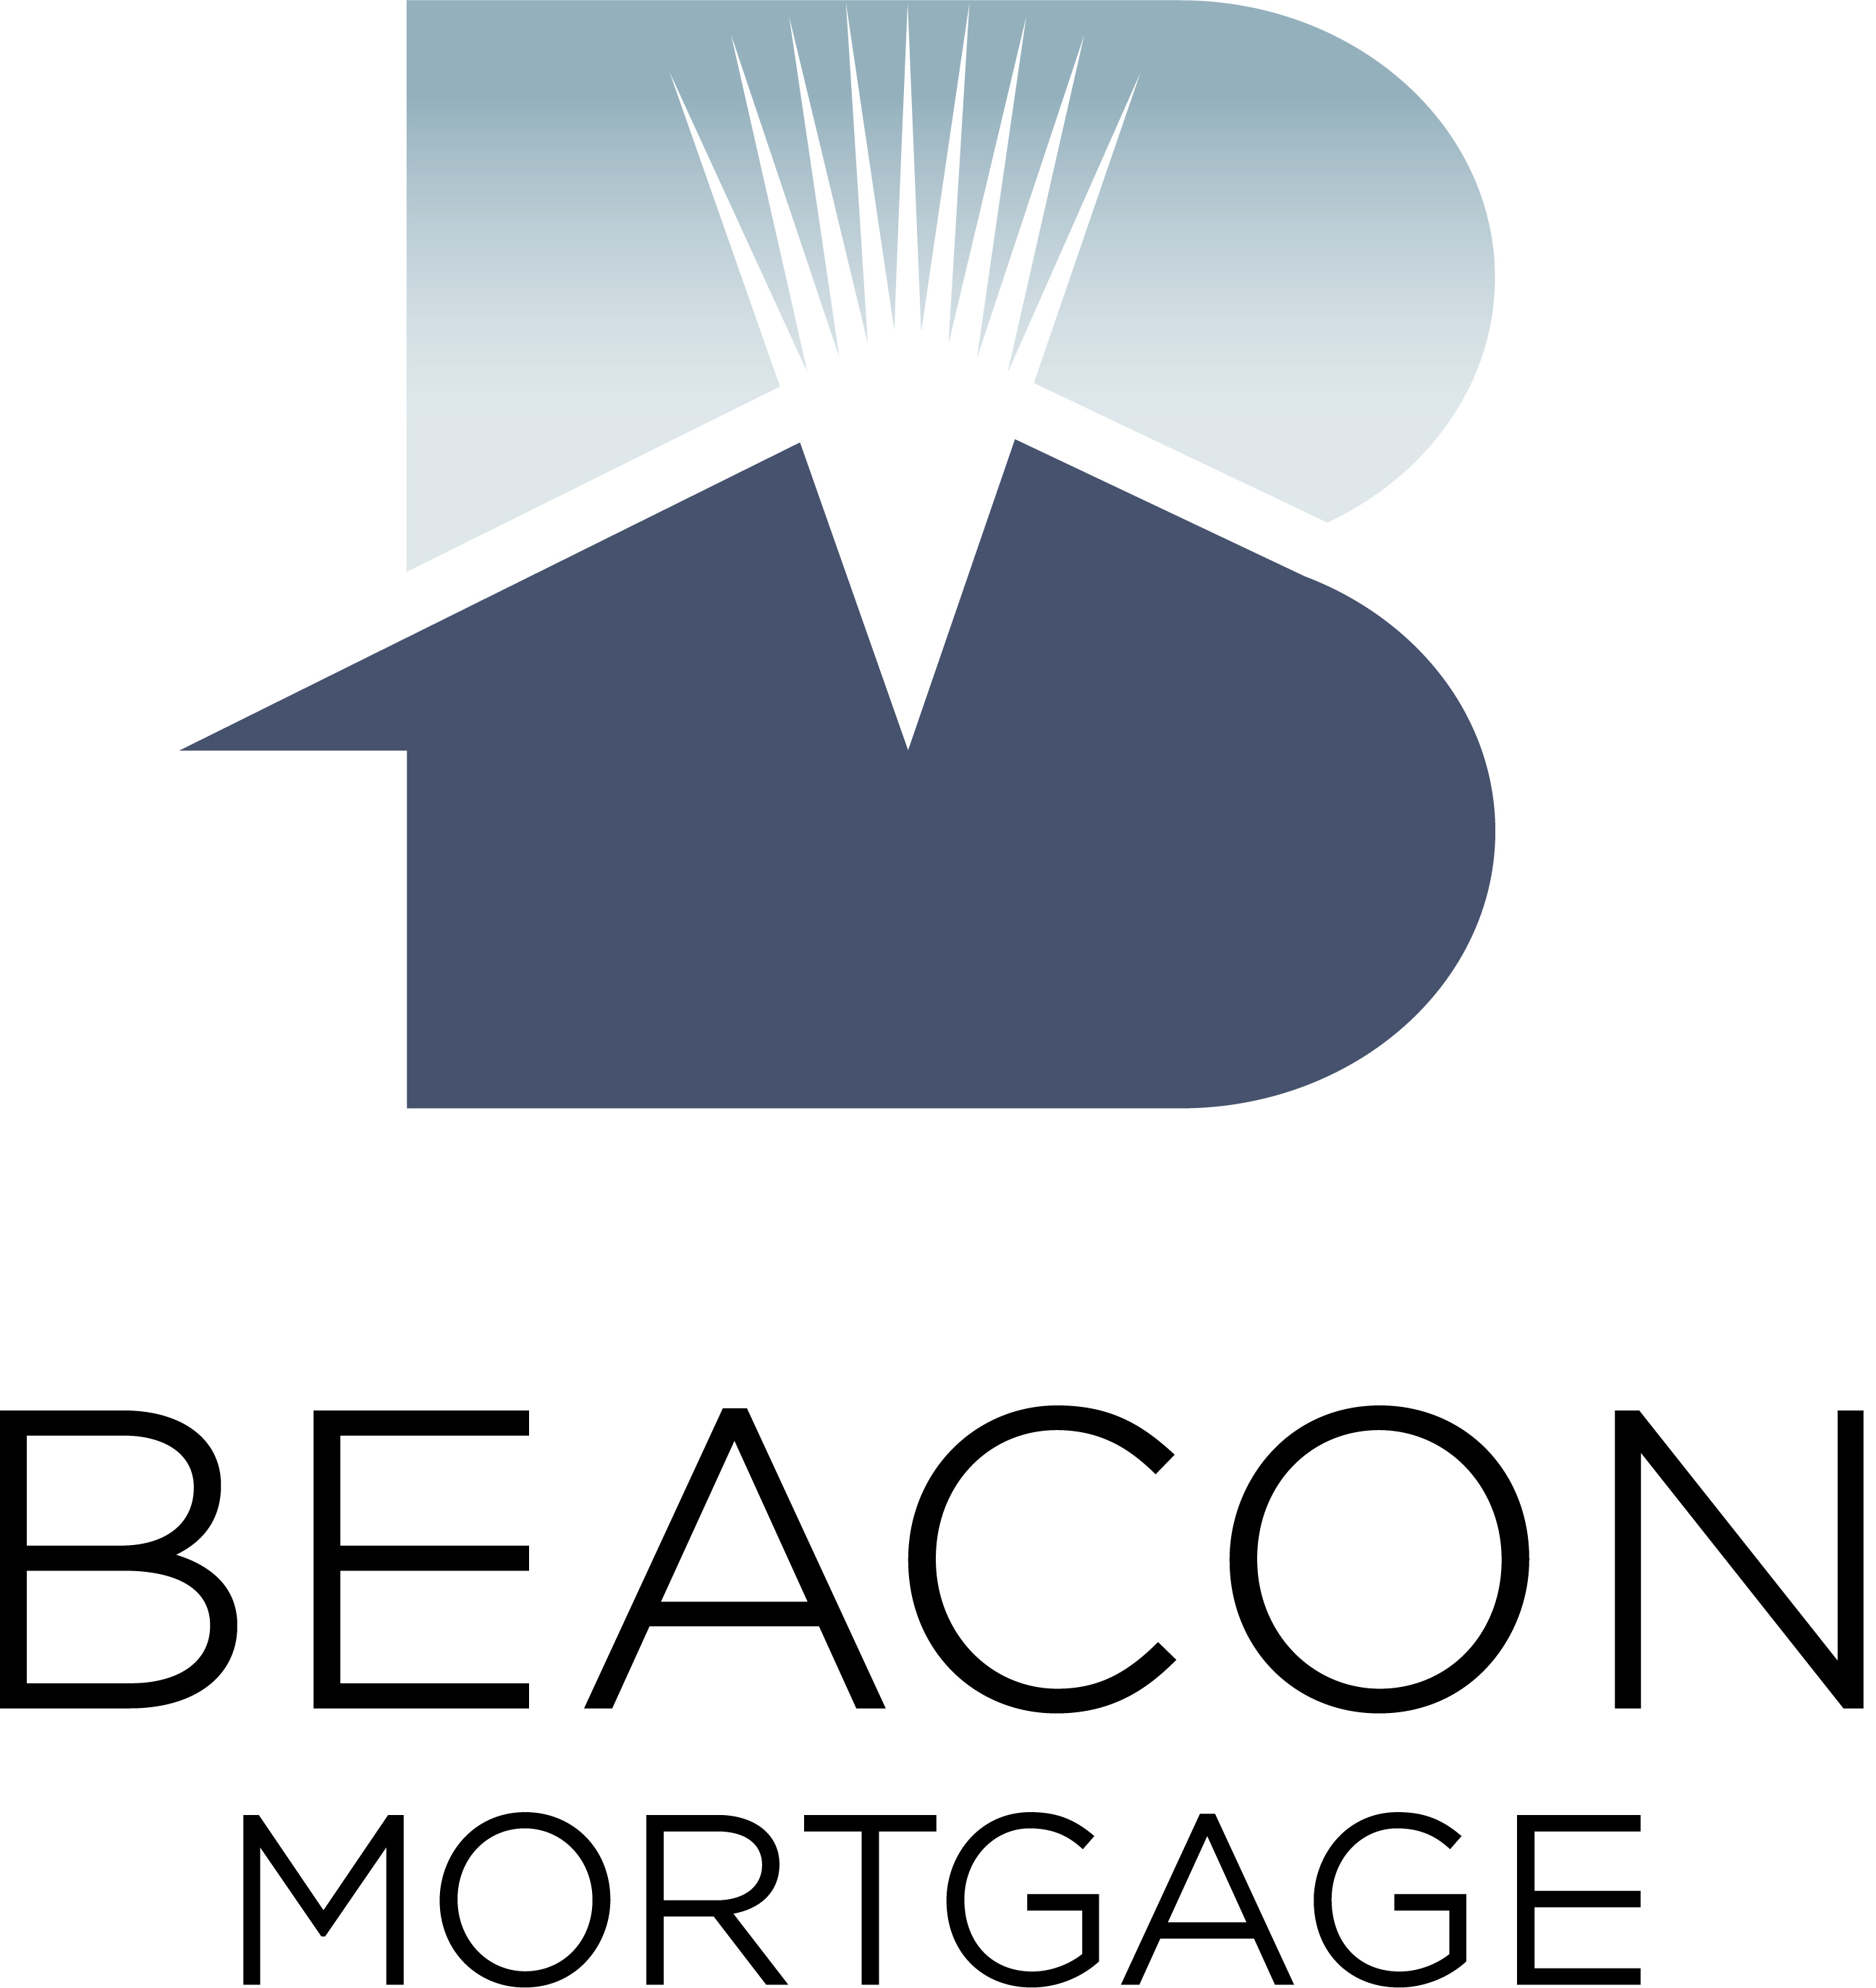 Beacon Mortgage